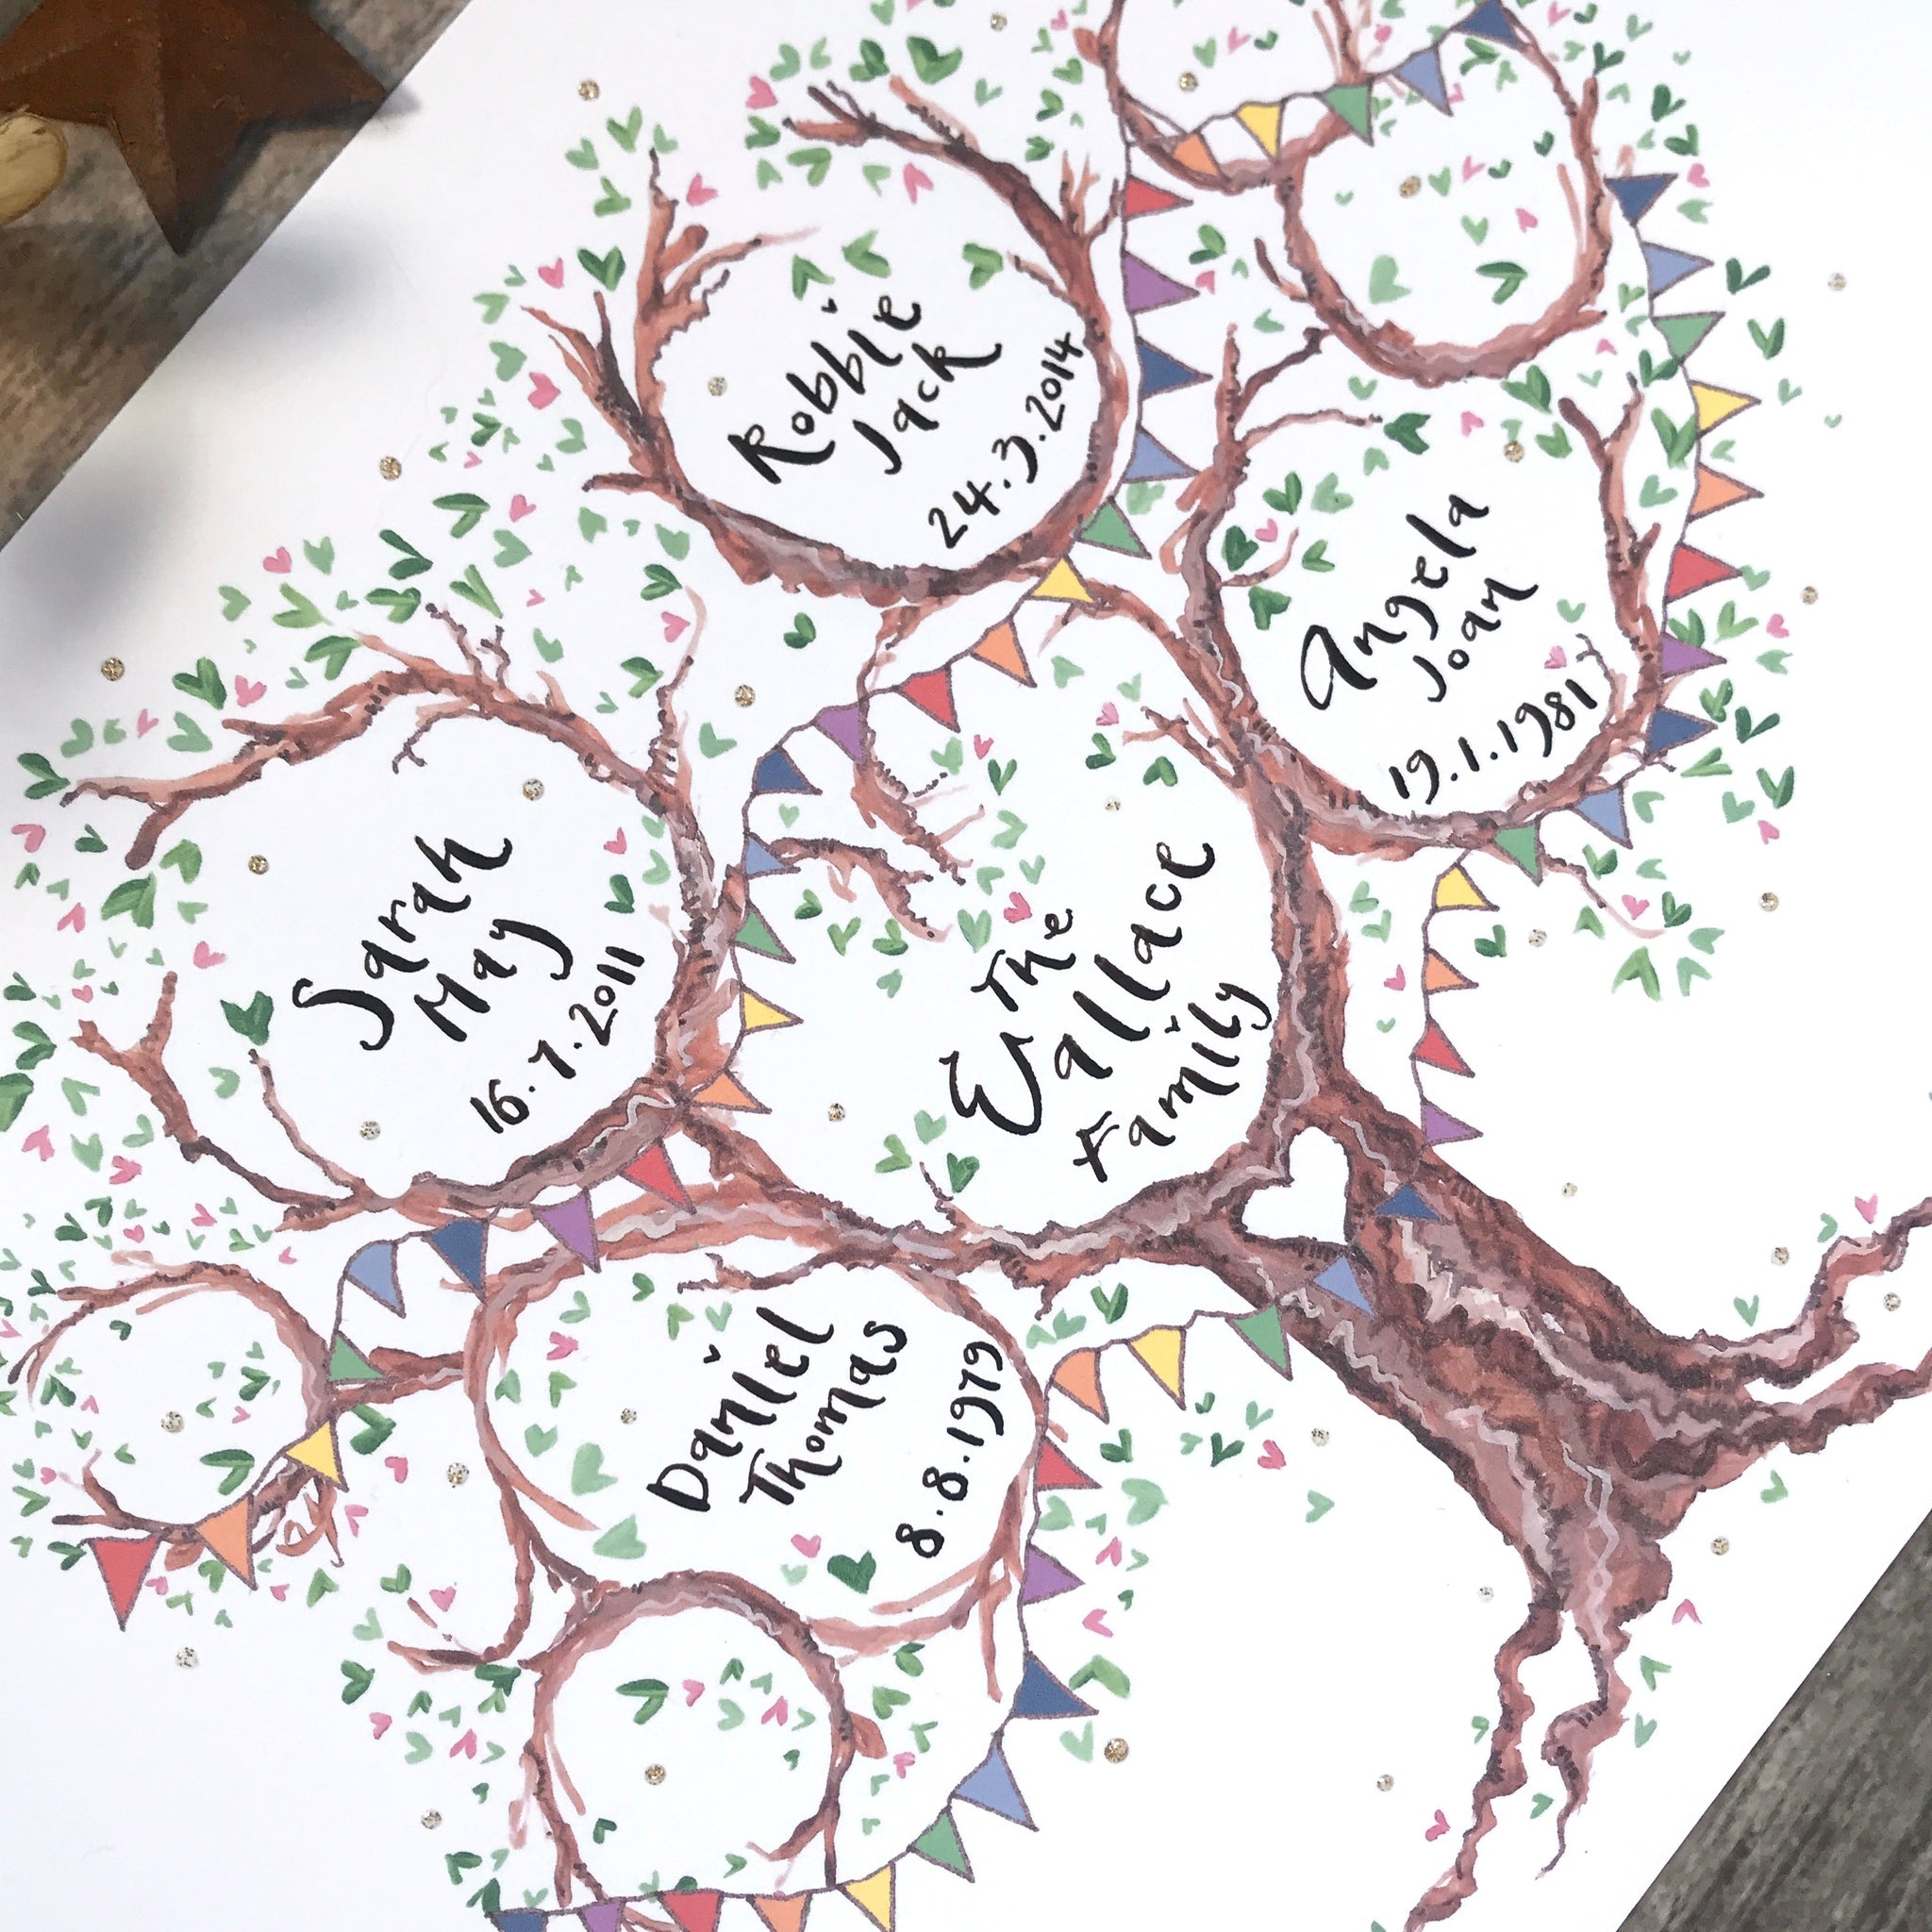 Family Tree / How to Make Family Tree Easy Step / Family Tree Project Ideas  / Family Tree Drawing - YouTube